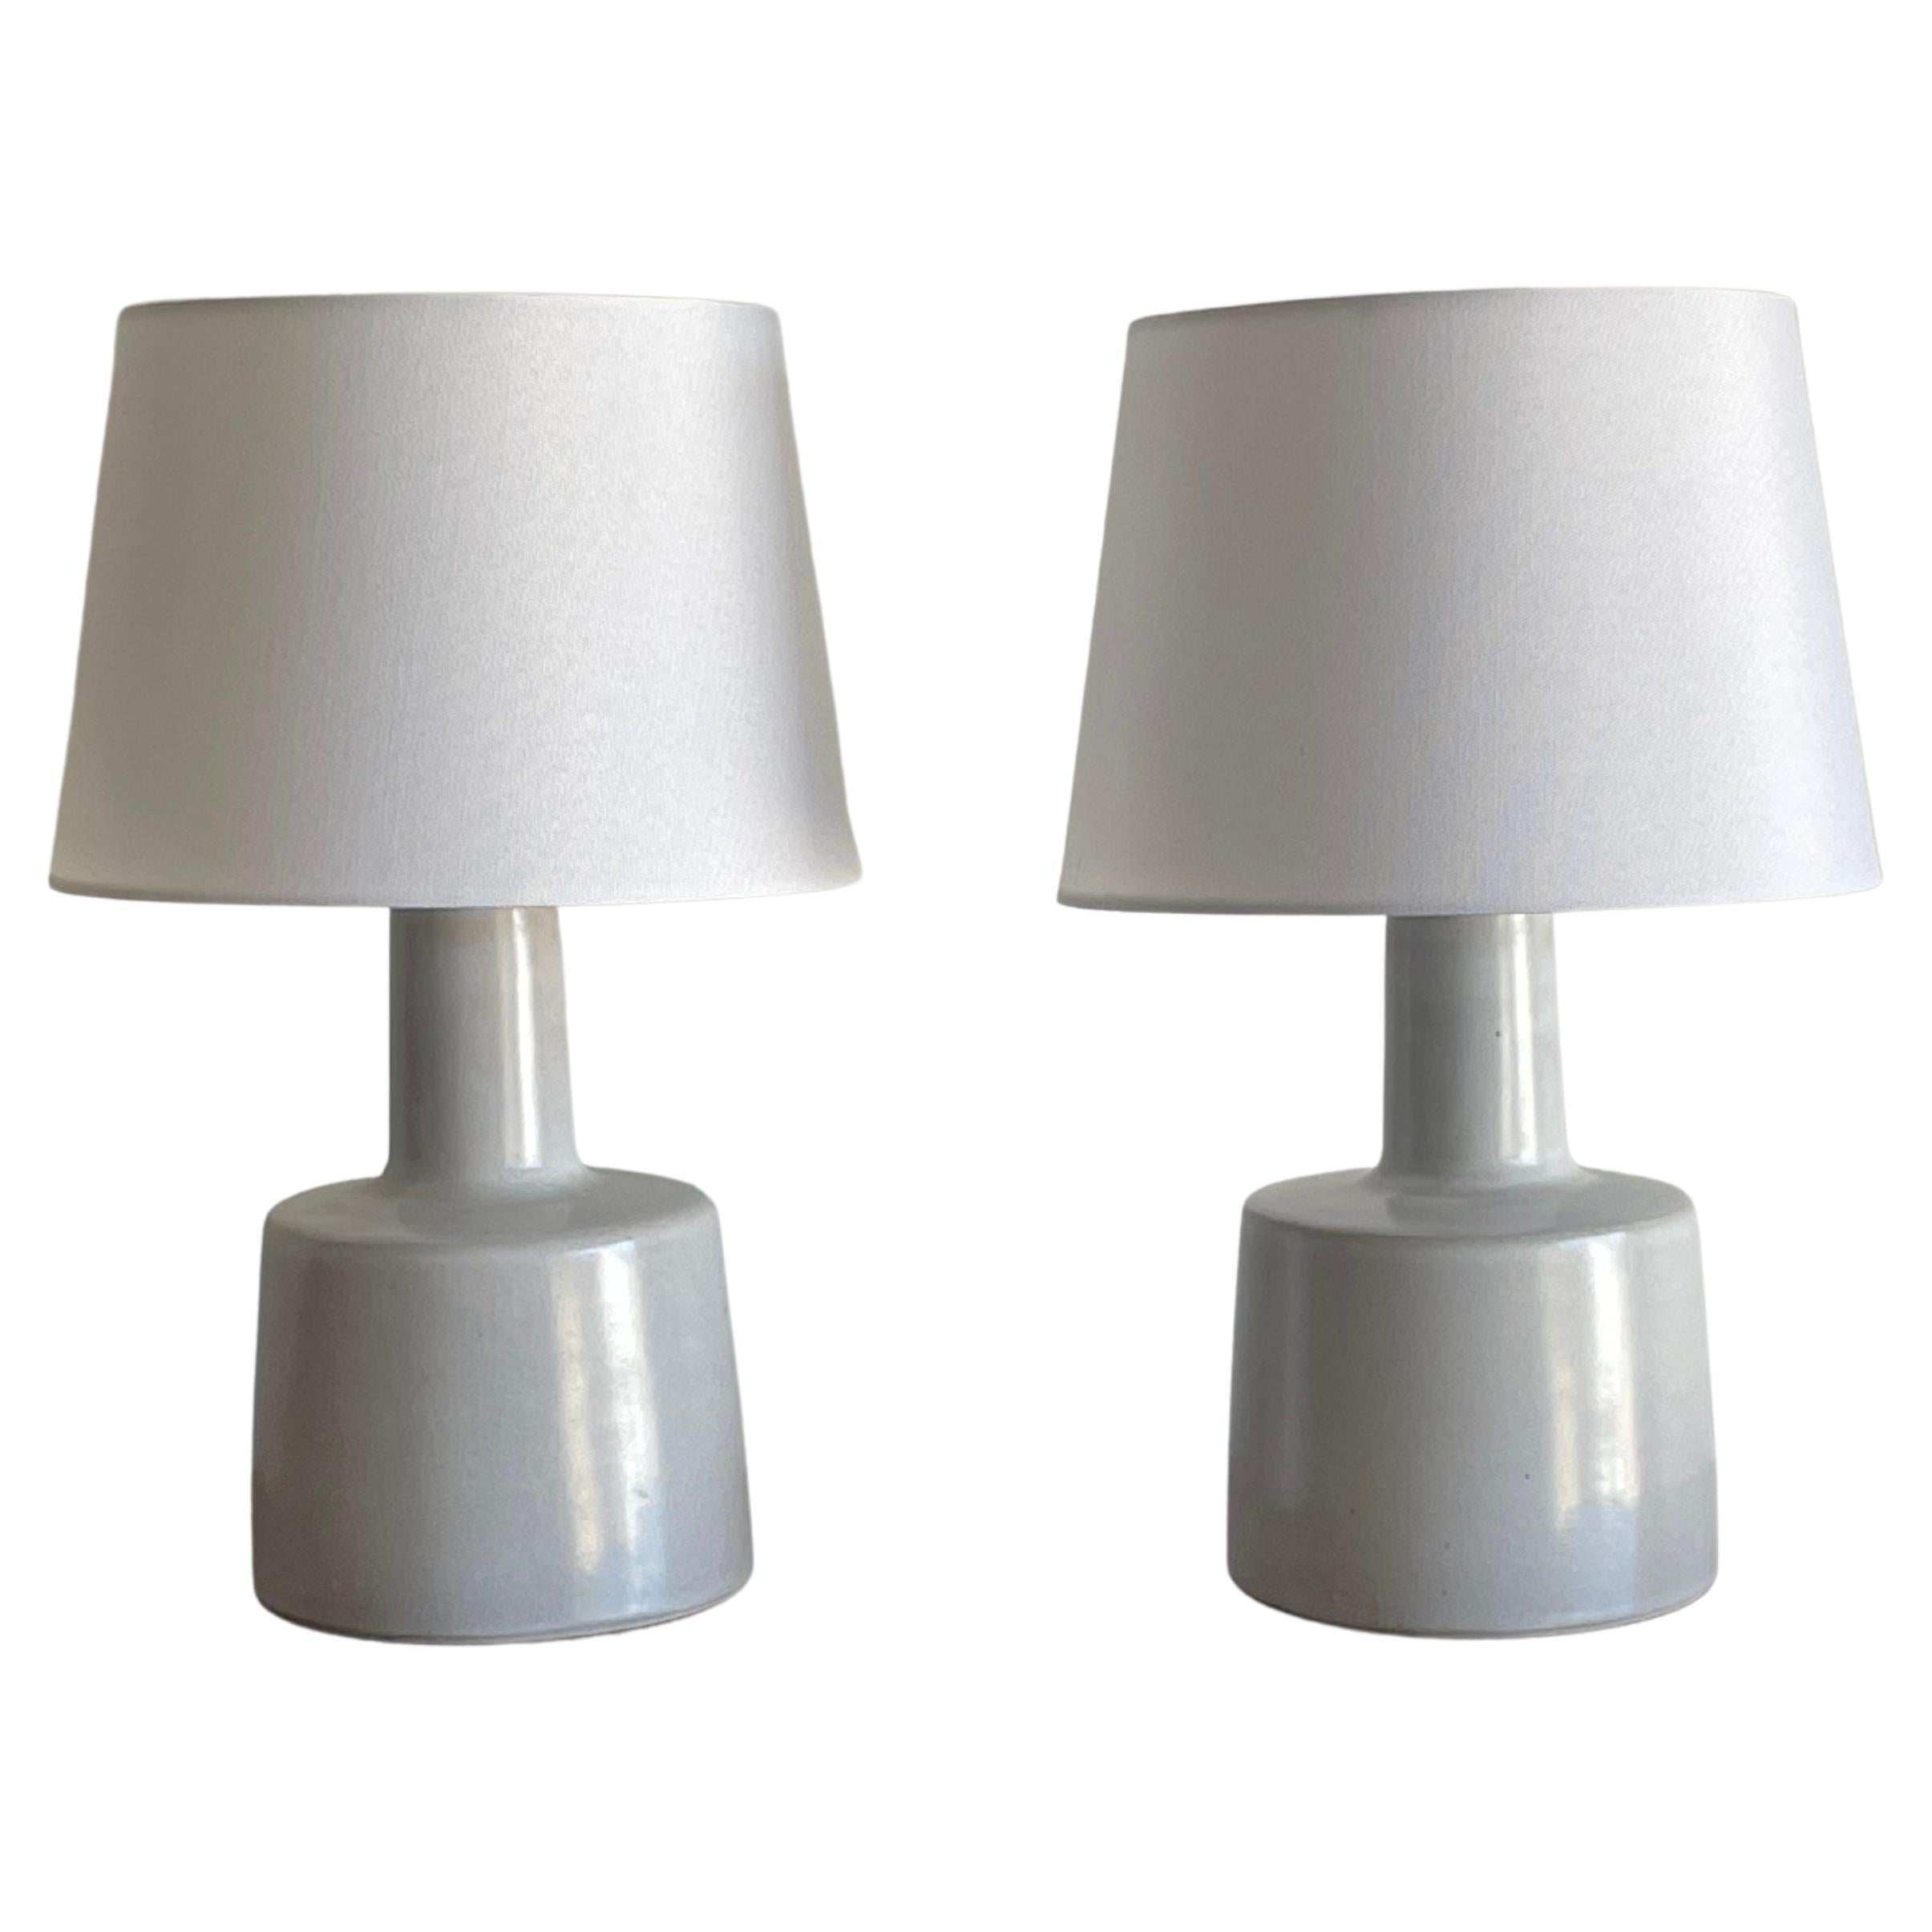 Martz-Lampen von Jane und Gordon Martz für Marshall Studios, Keramik-Tischlampen